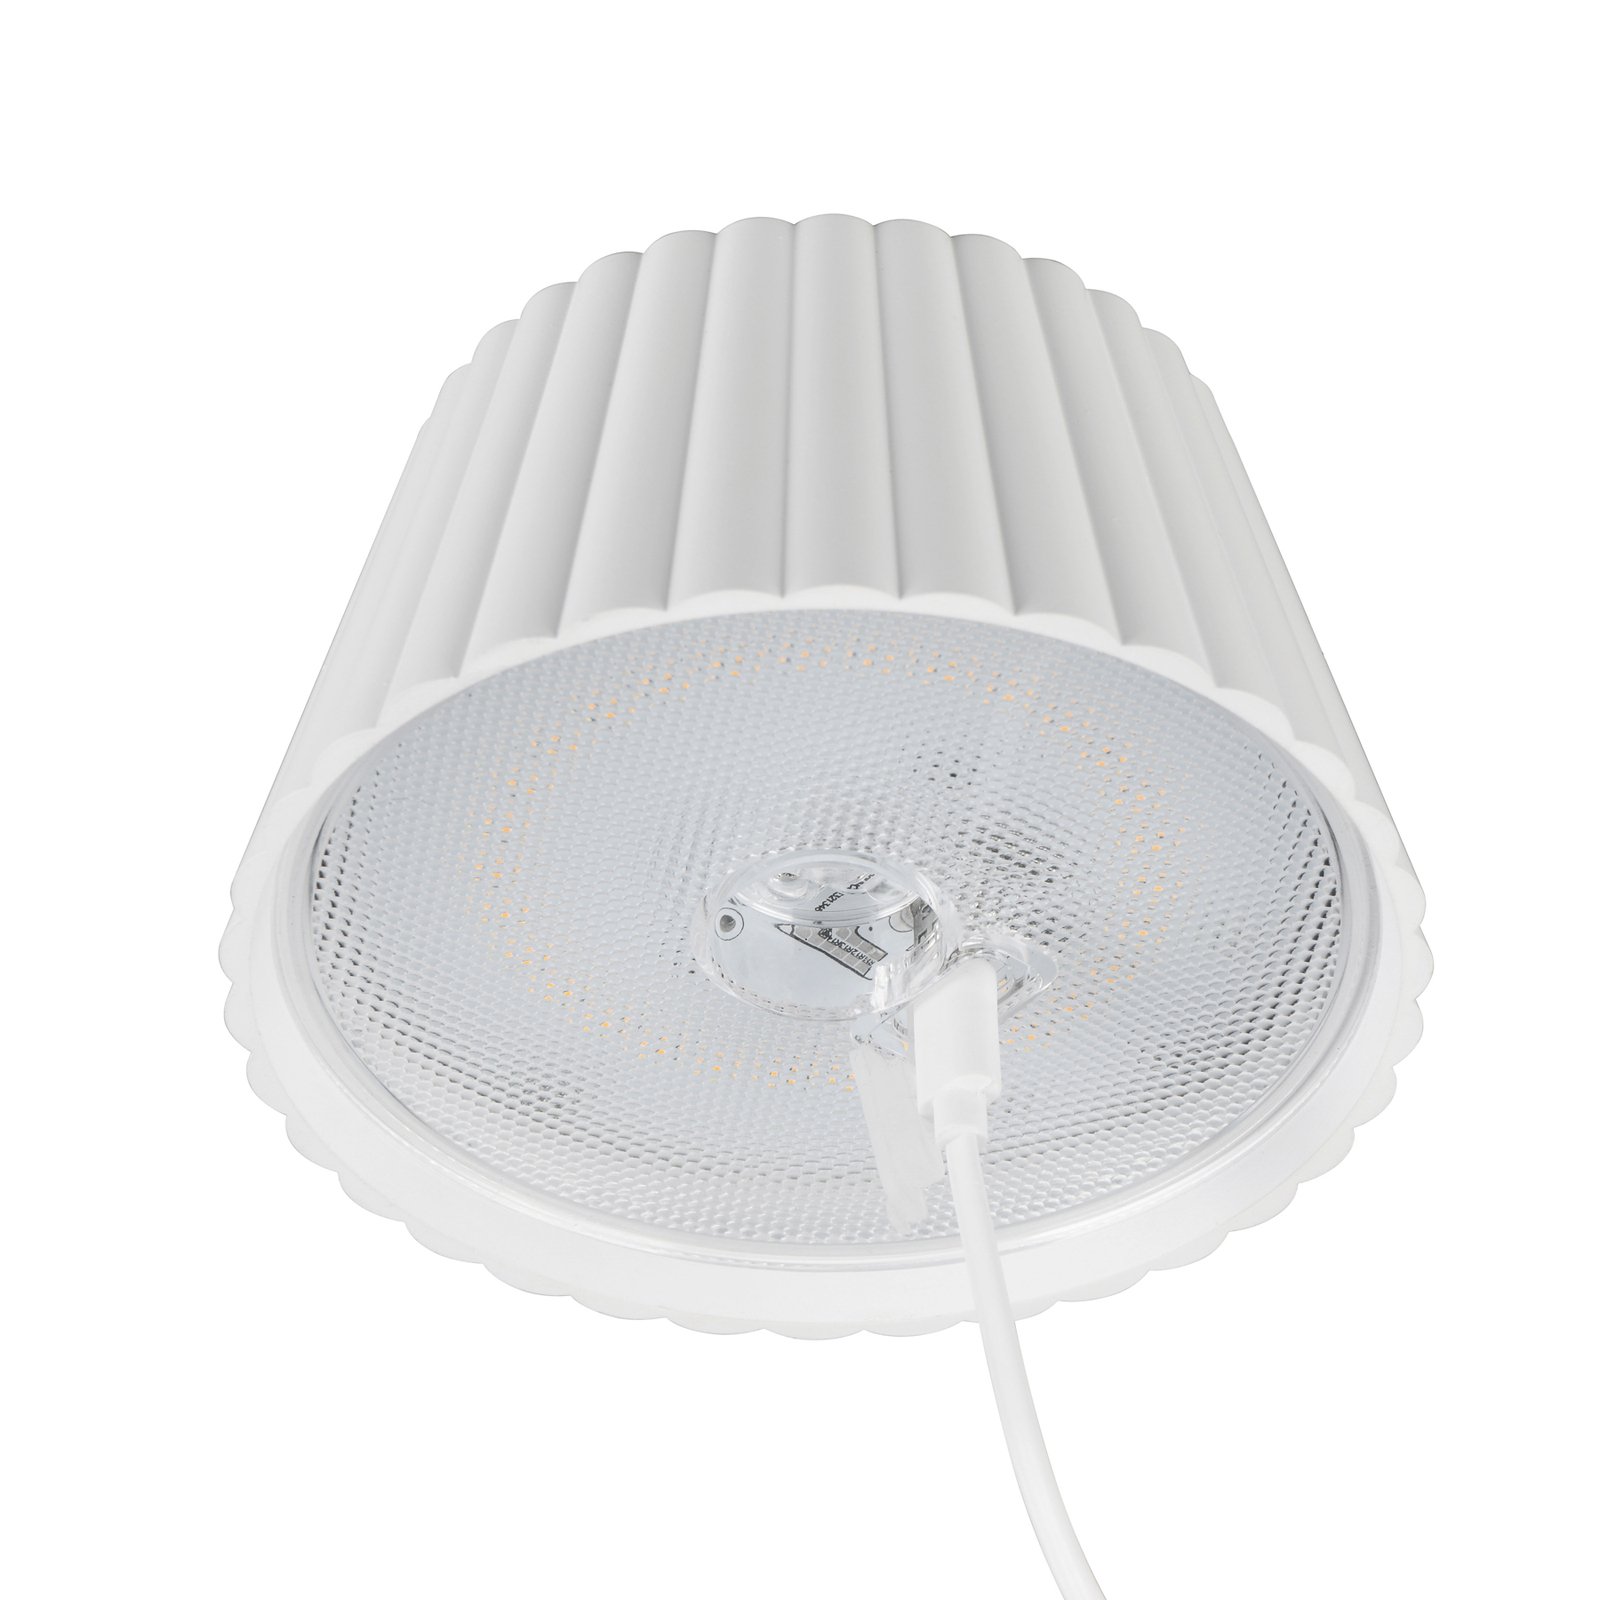 Lampe sur pied LED rechargeable Suarez, blanc, hauteur 123 cm, métal